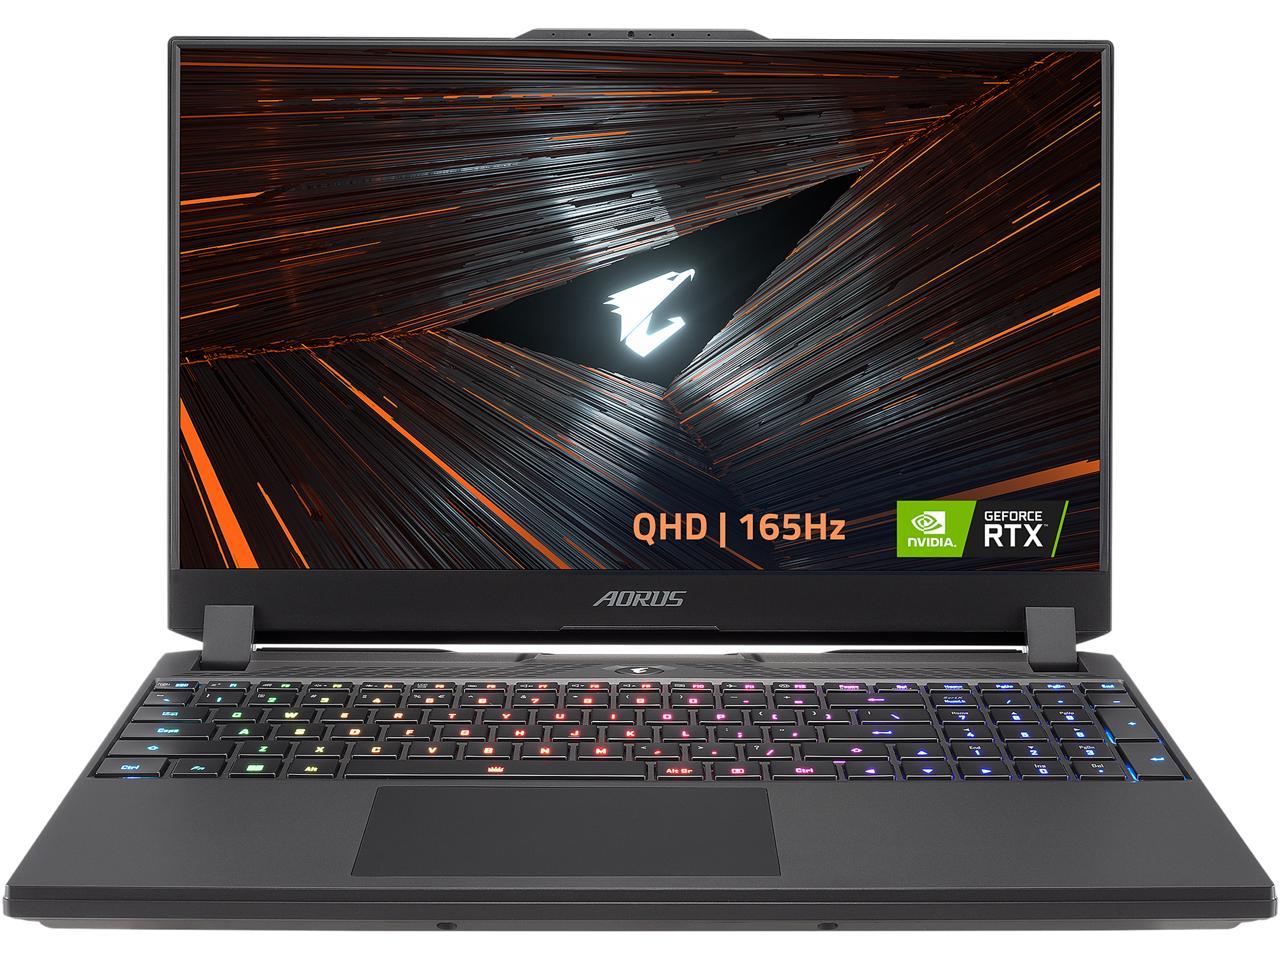 Gigabyte AORUS Laptop: 15.6" QHD 165Hz, i7-12700H, RTX 3070 Ti, 16GB, 1TB SSD $1430